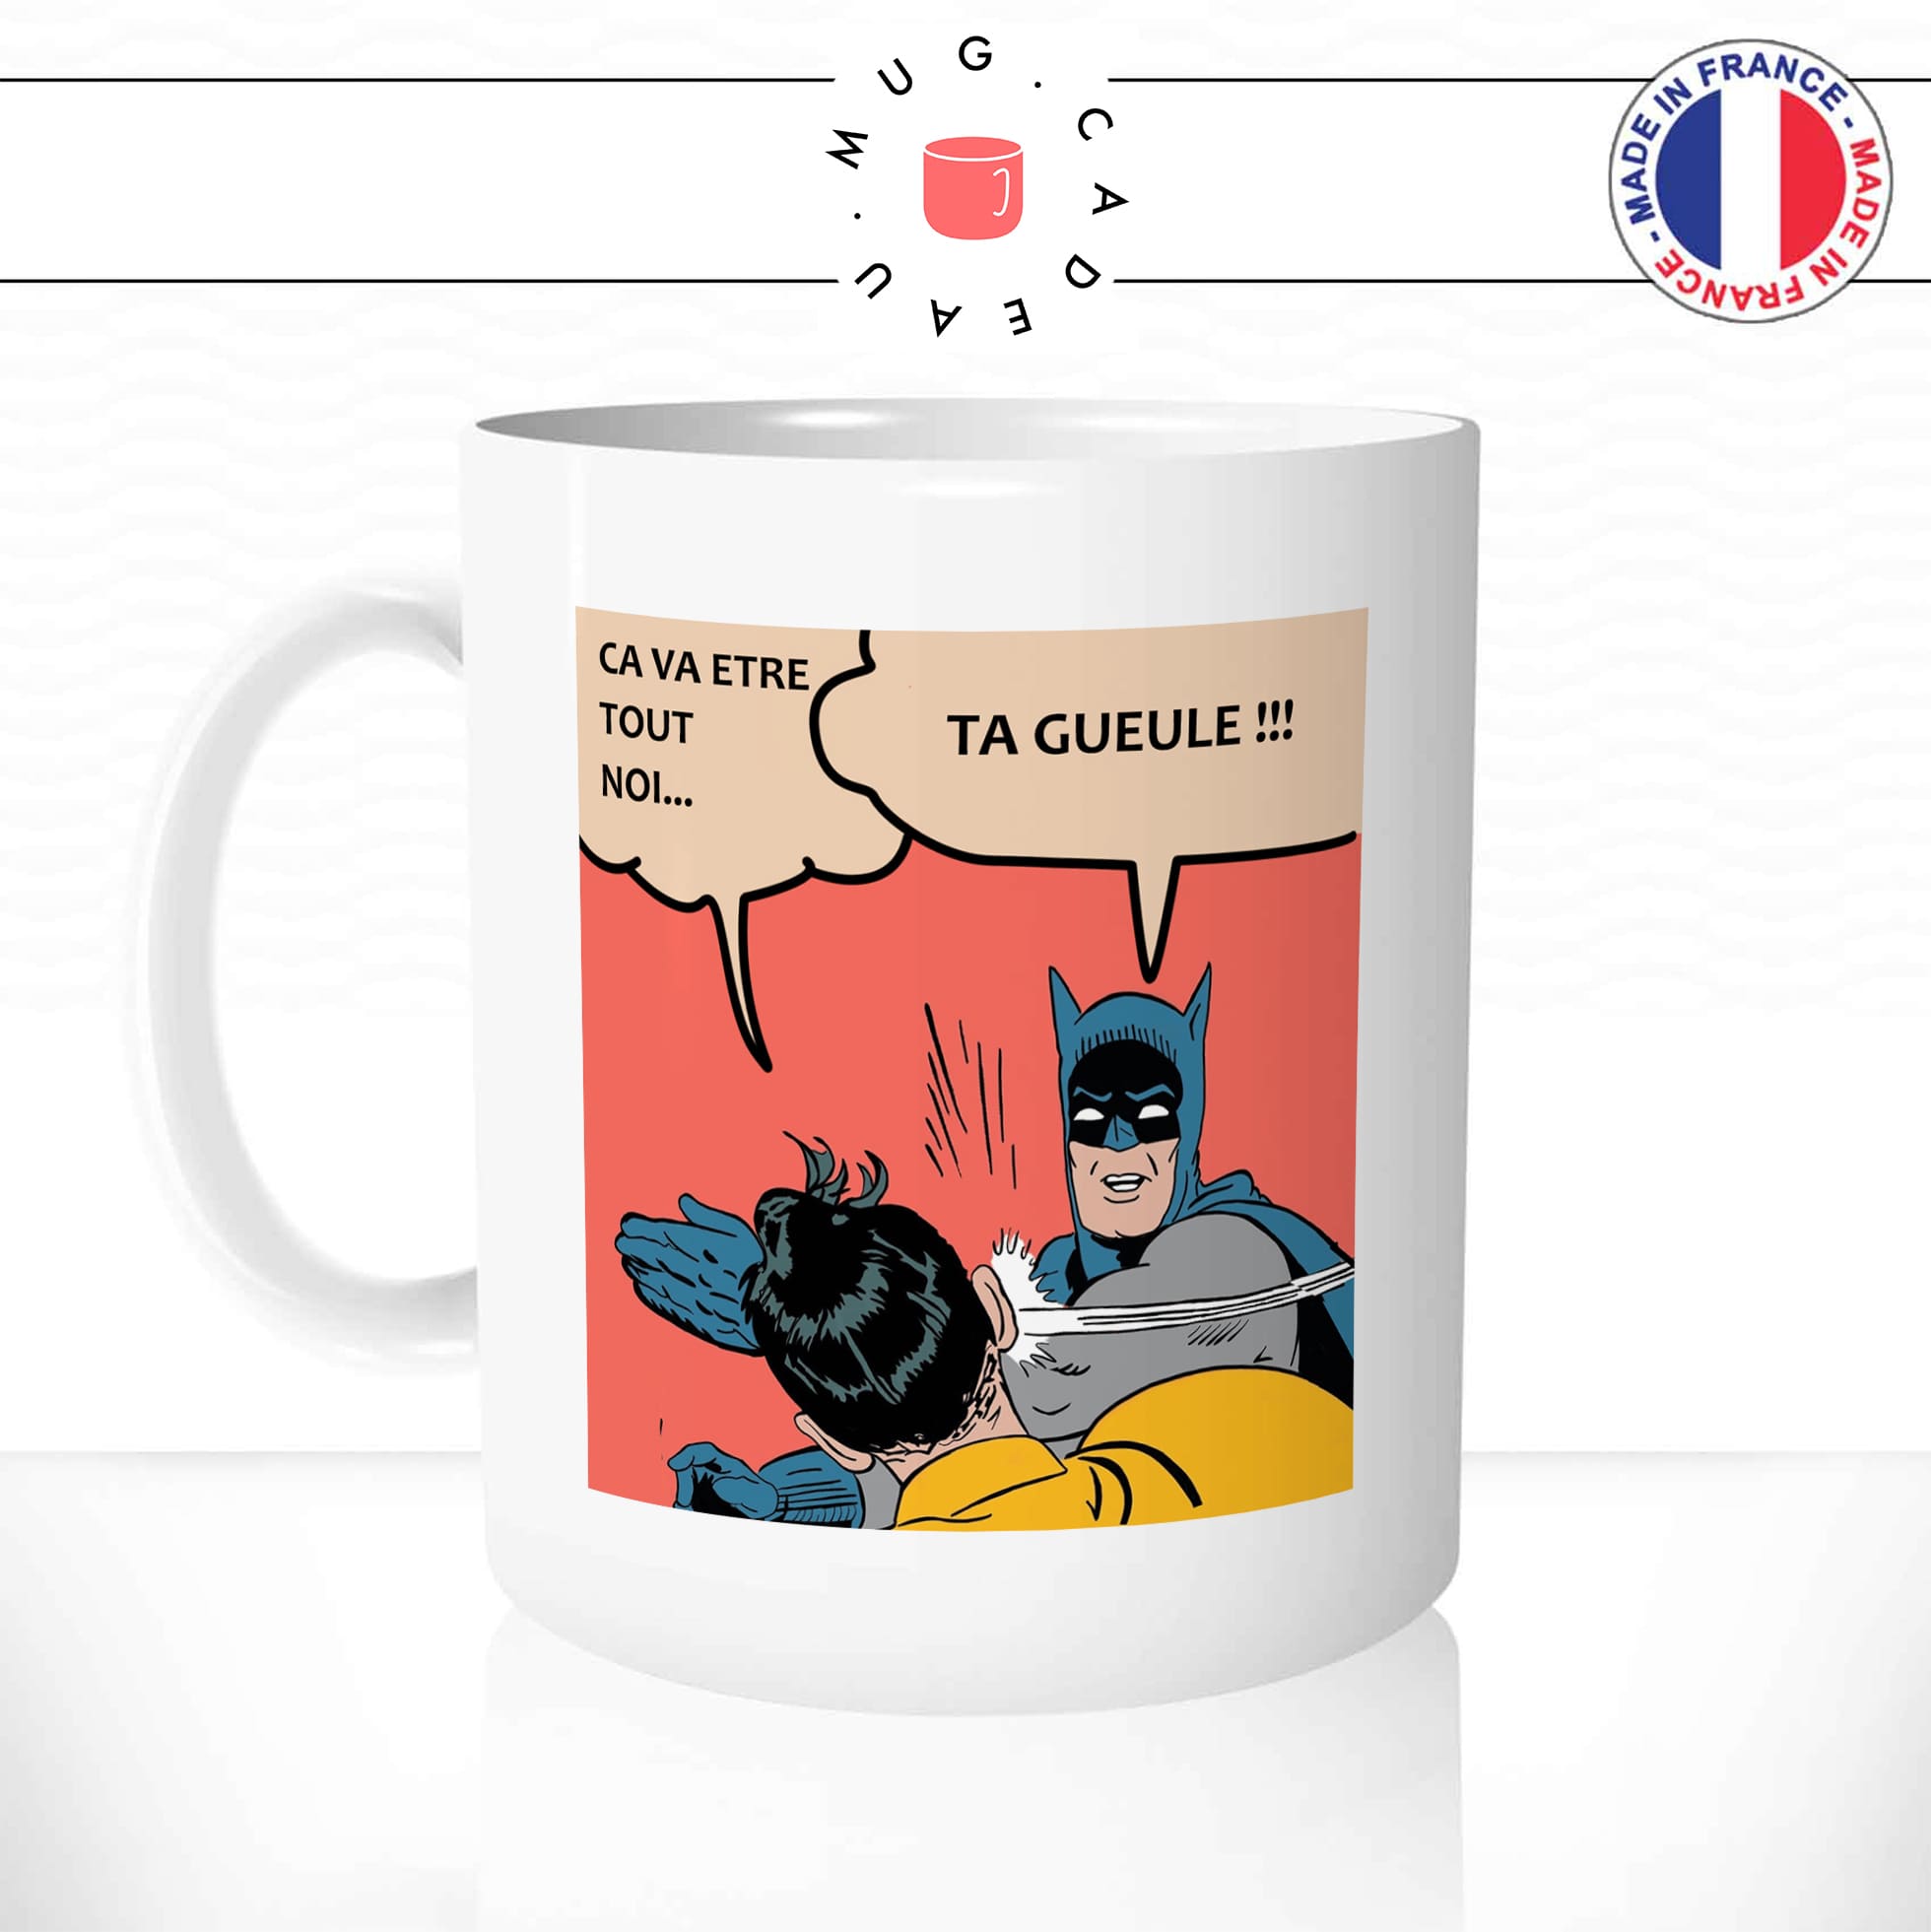 mug-tasse-blanc-unique-meme-batman-gifle-ca-va-etre-tout-noir-ta-gueule-film-réplique-Rrrr-humour-fun-cool-idée-cadeau-original